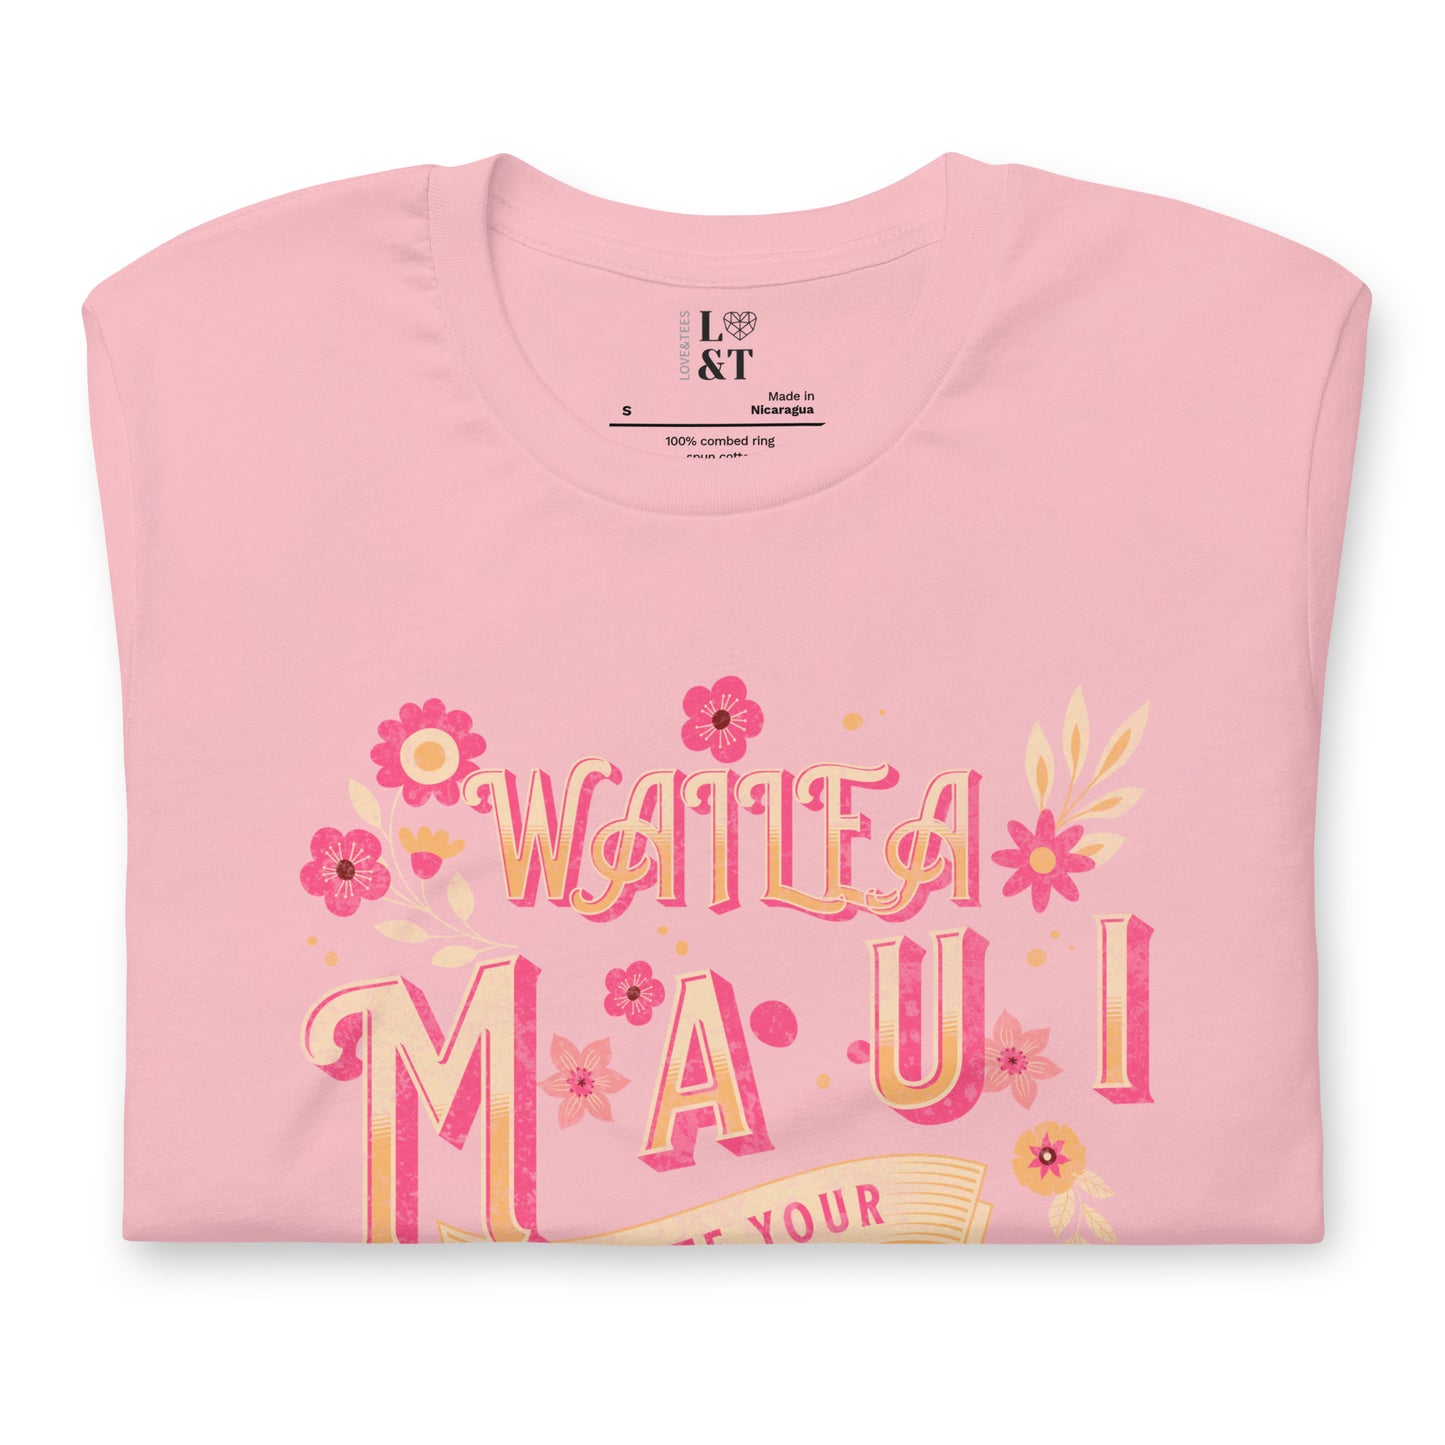 Wailea Maui Unisex T-Shirt